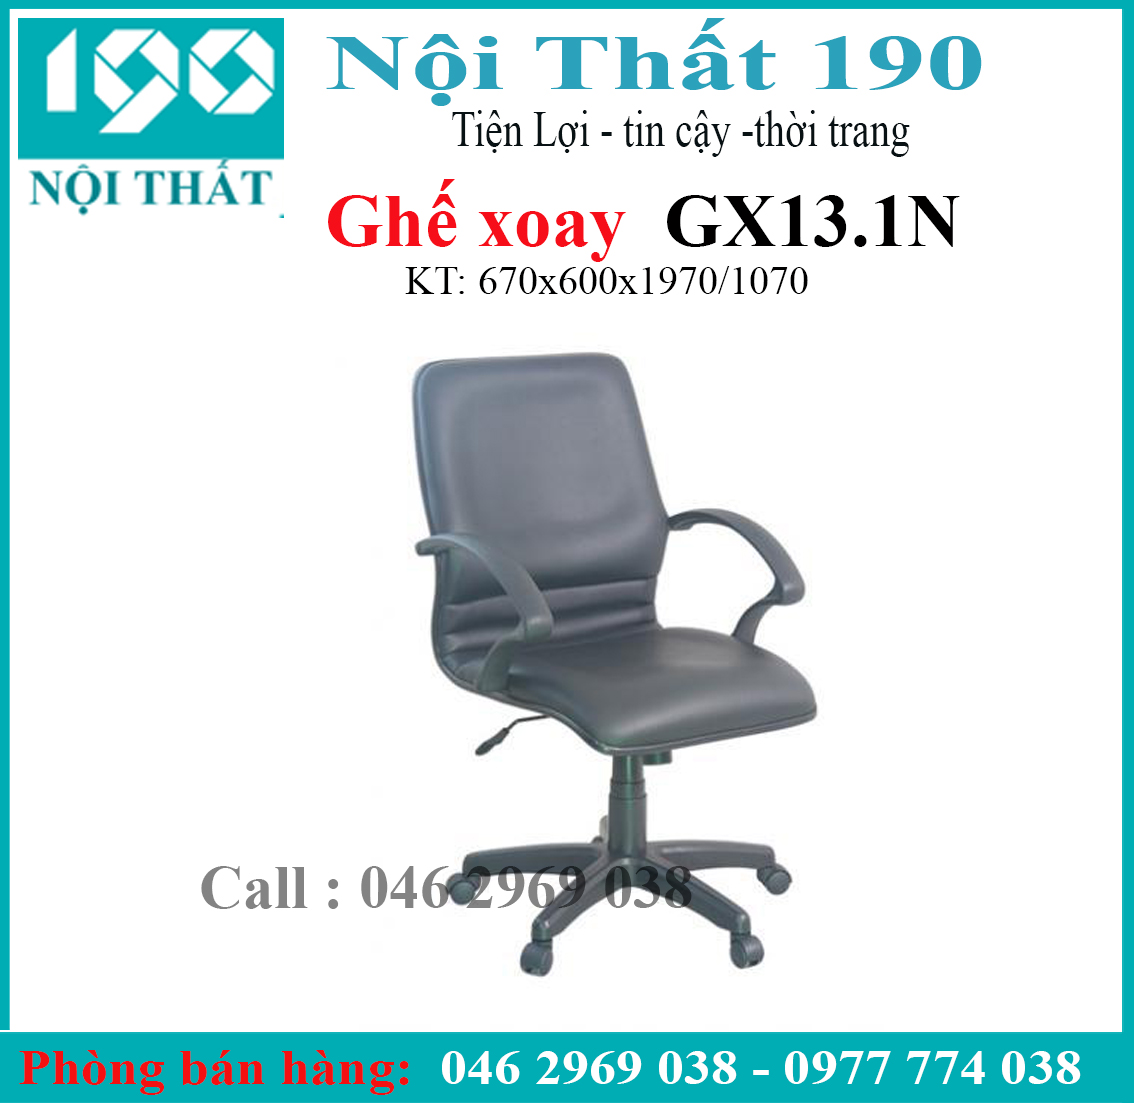 Ghế xoay da GX13.1-N